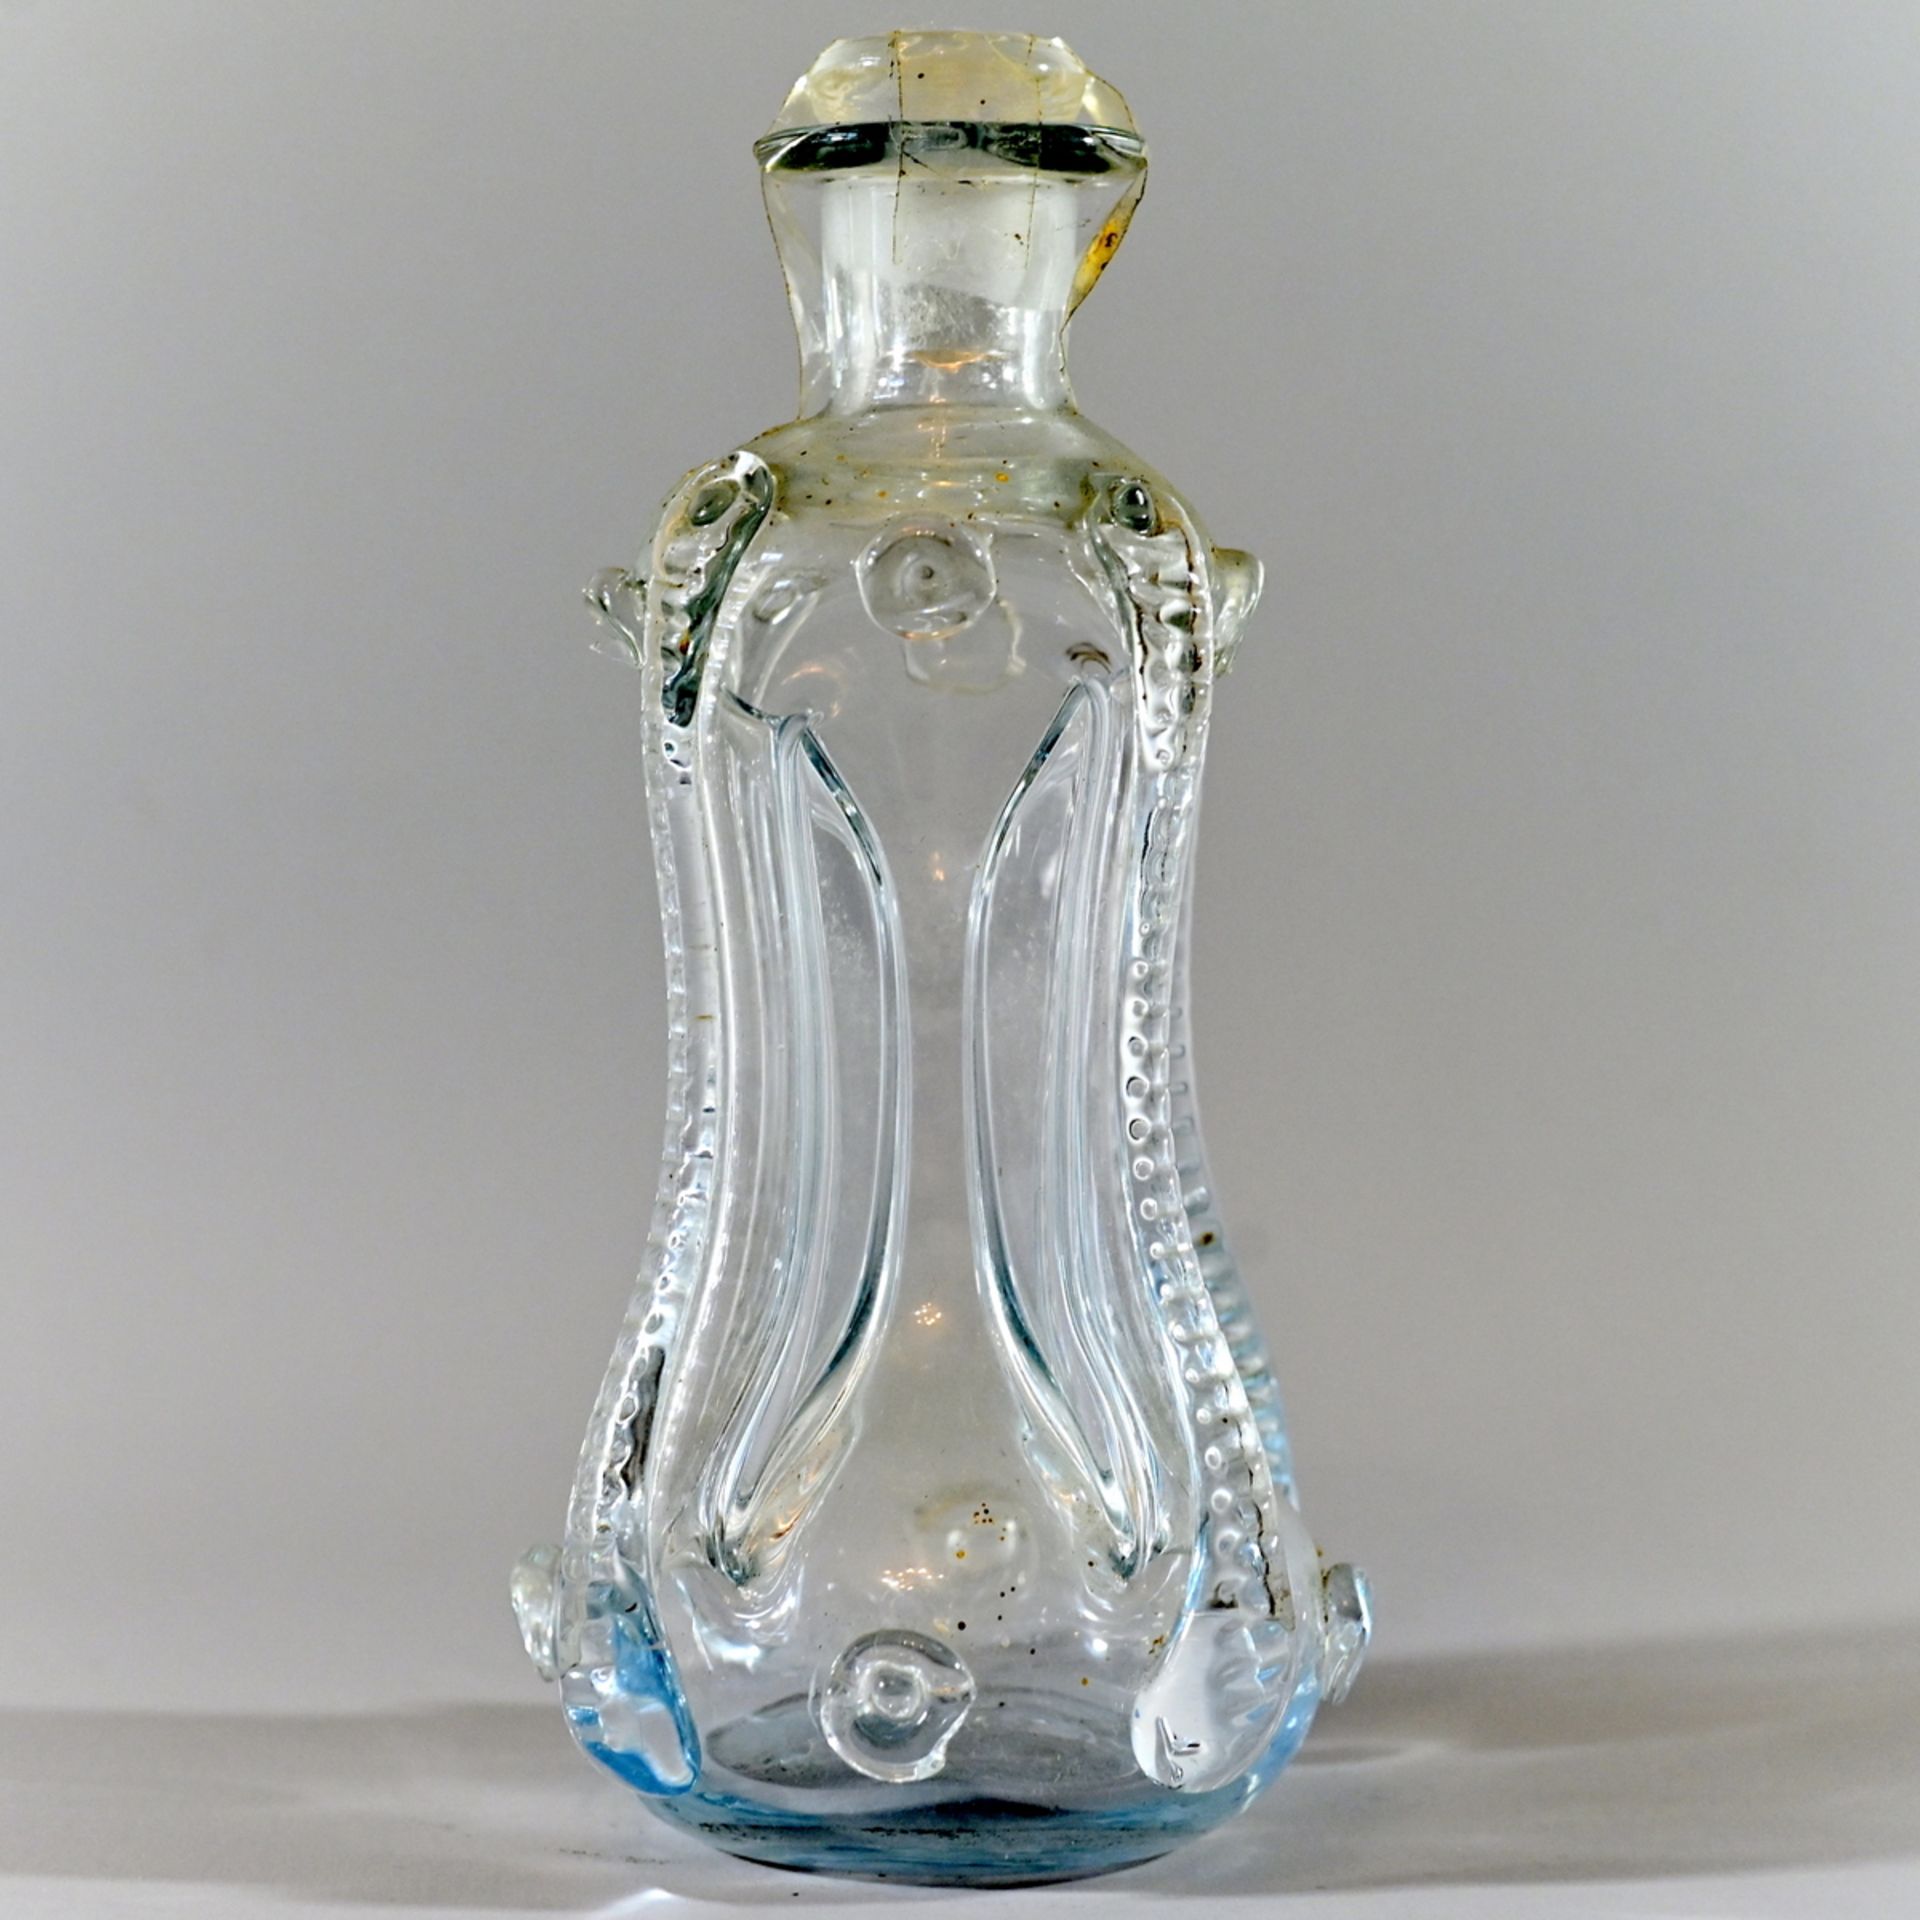 Holmegaard dänische Gluckerflasche, farbloses Glas mit vier aufgeschmolzenen Beerennoppen, H. 20cm